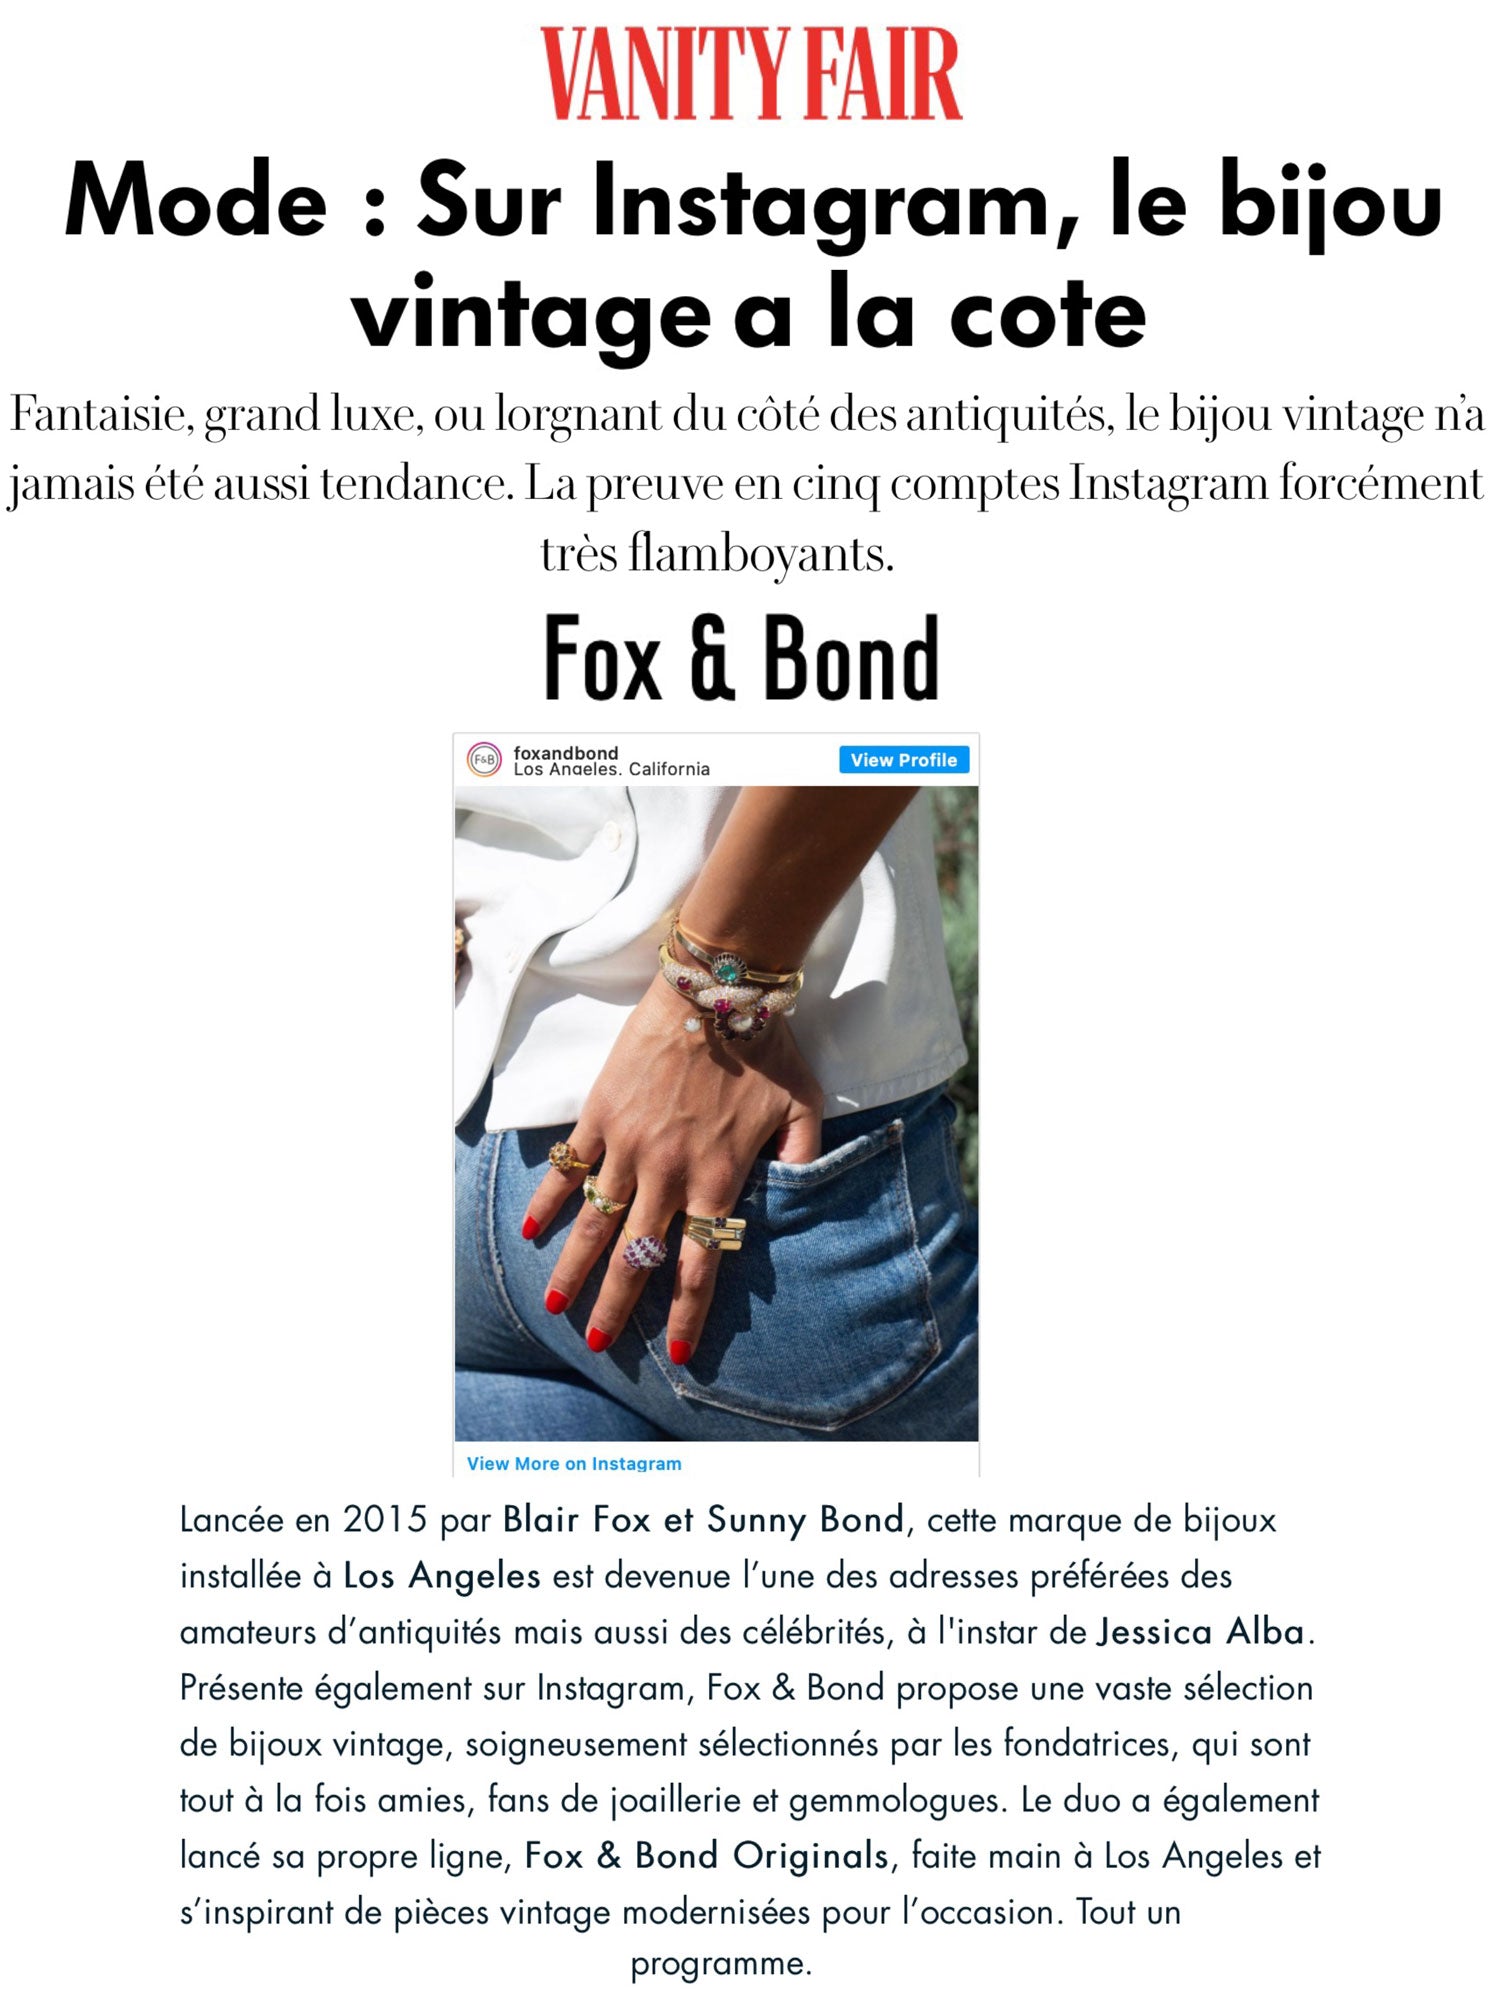 Vanity Fair France: On Instagram, vintage jewelry is popular